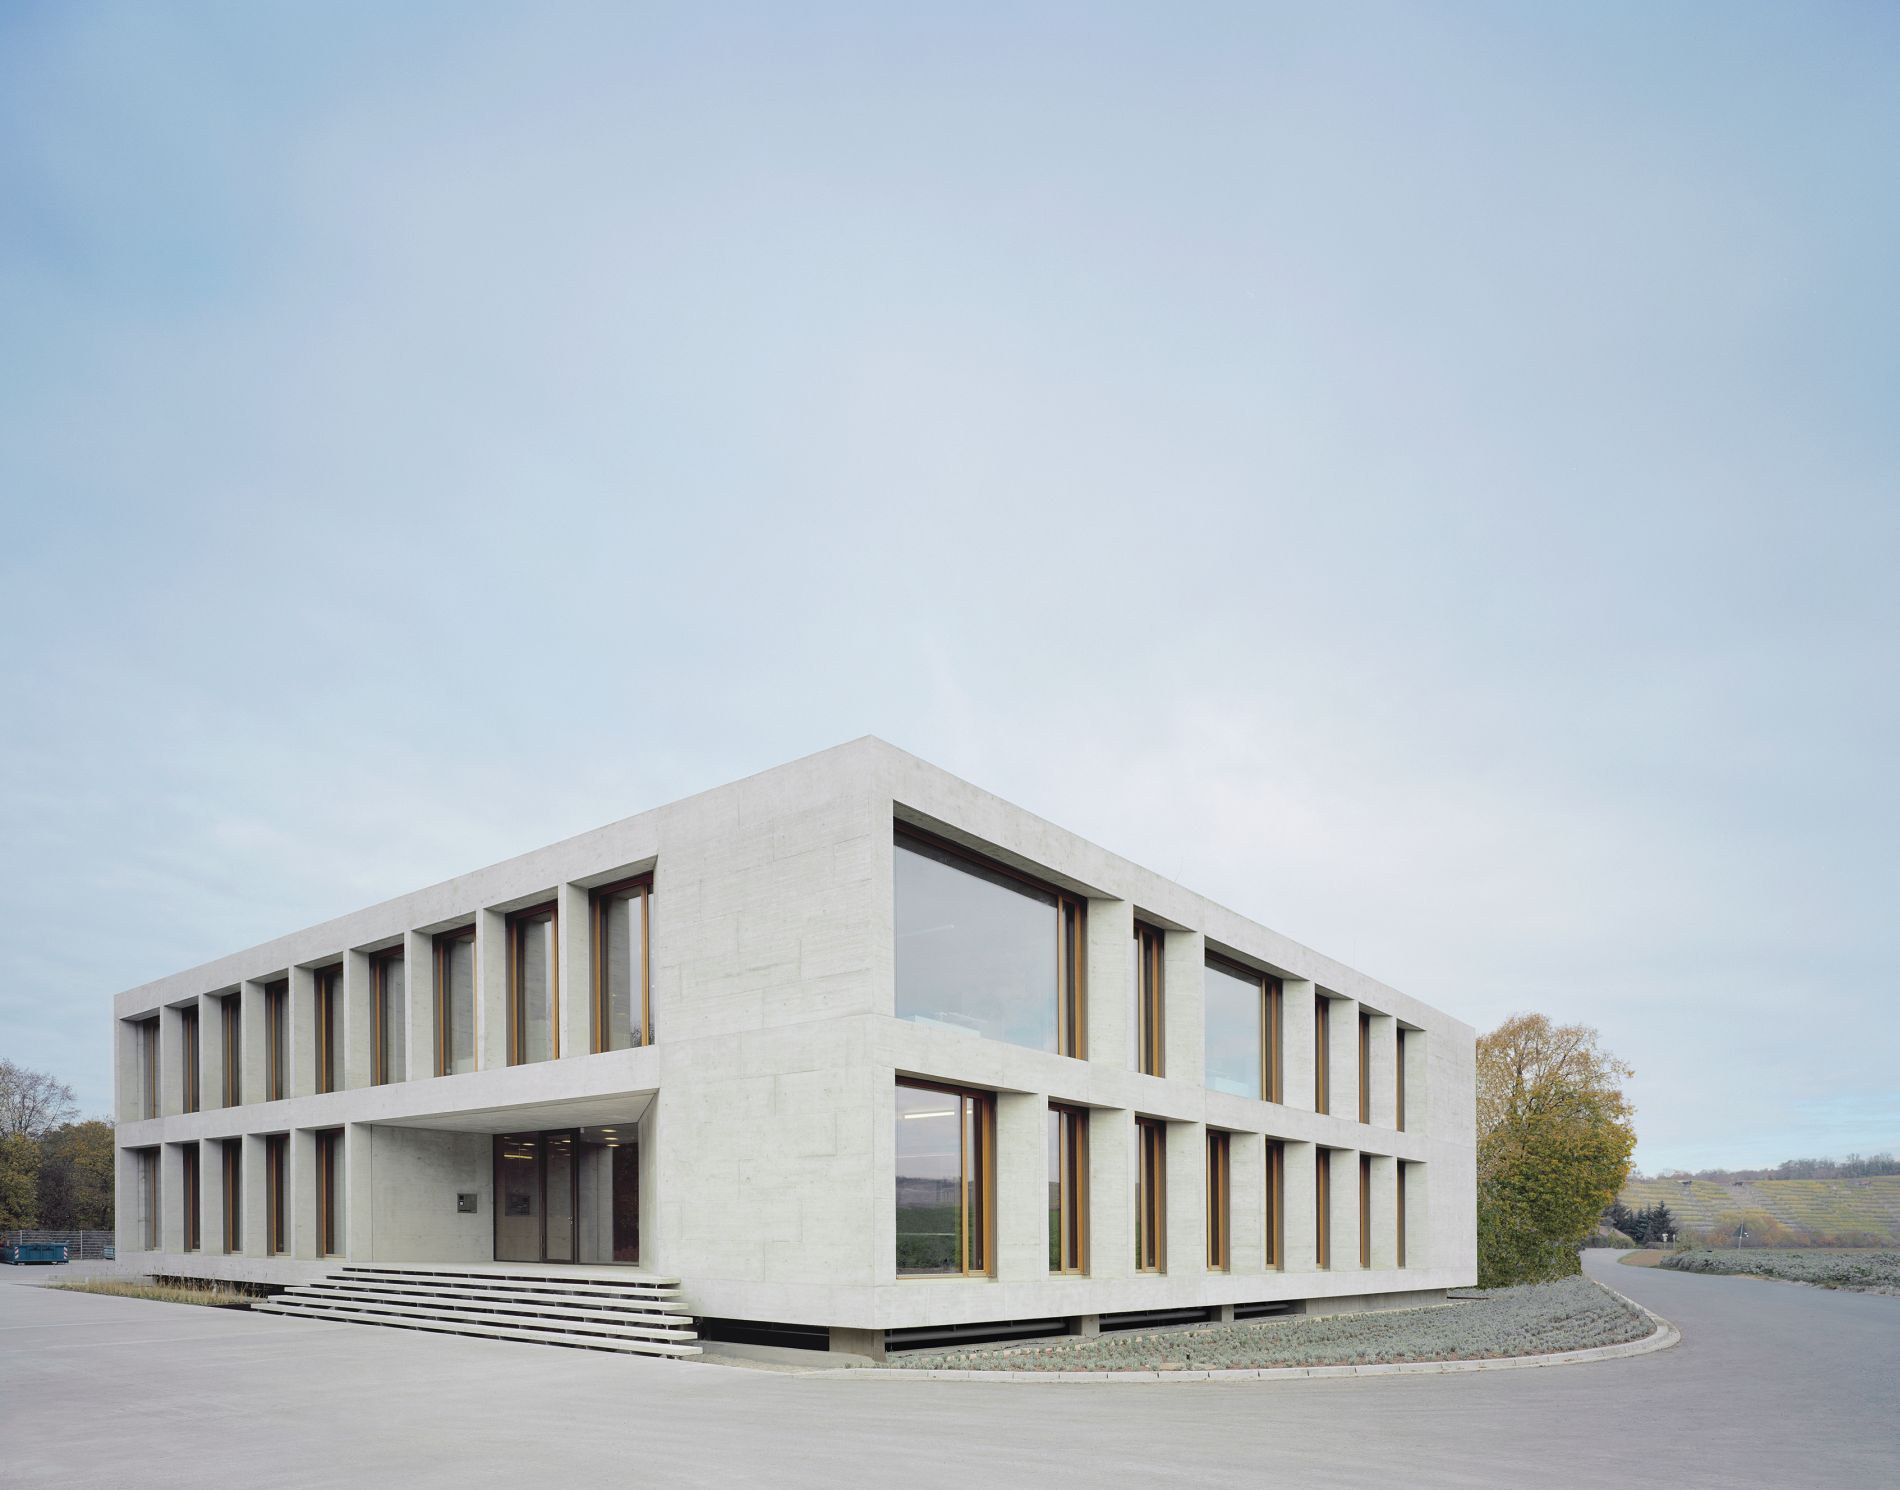 Das Bild zeigt das Verwaltungs- und Sozialgebäude der Karl Köhler GmbH in Besigheim: Man sieht ein zweigeschossiges Gebäude aus hellem Beton mit Flachdach und sehr großen, tief herabreichenden Fenstern. 